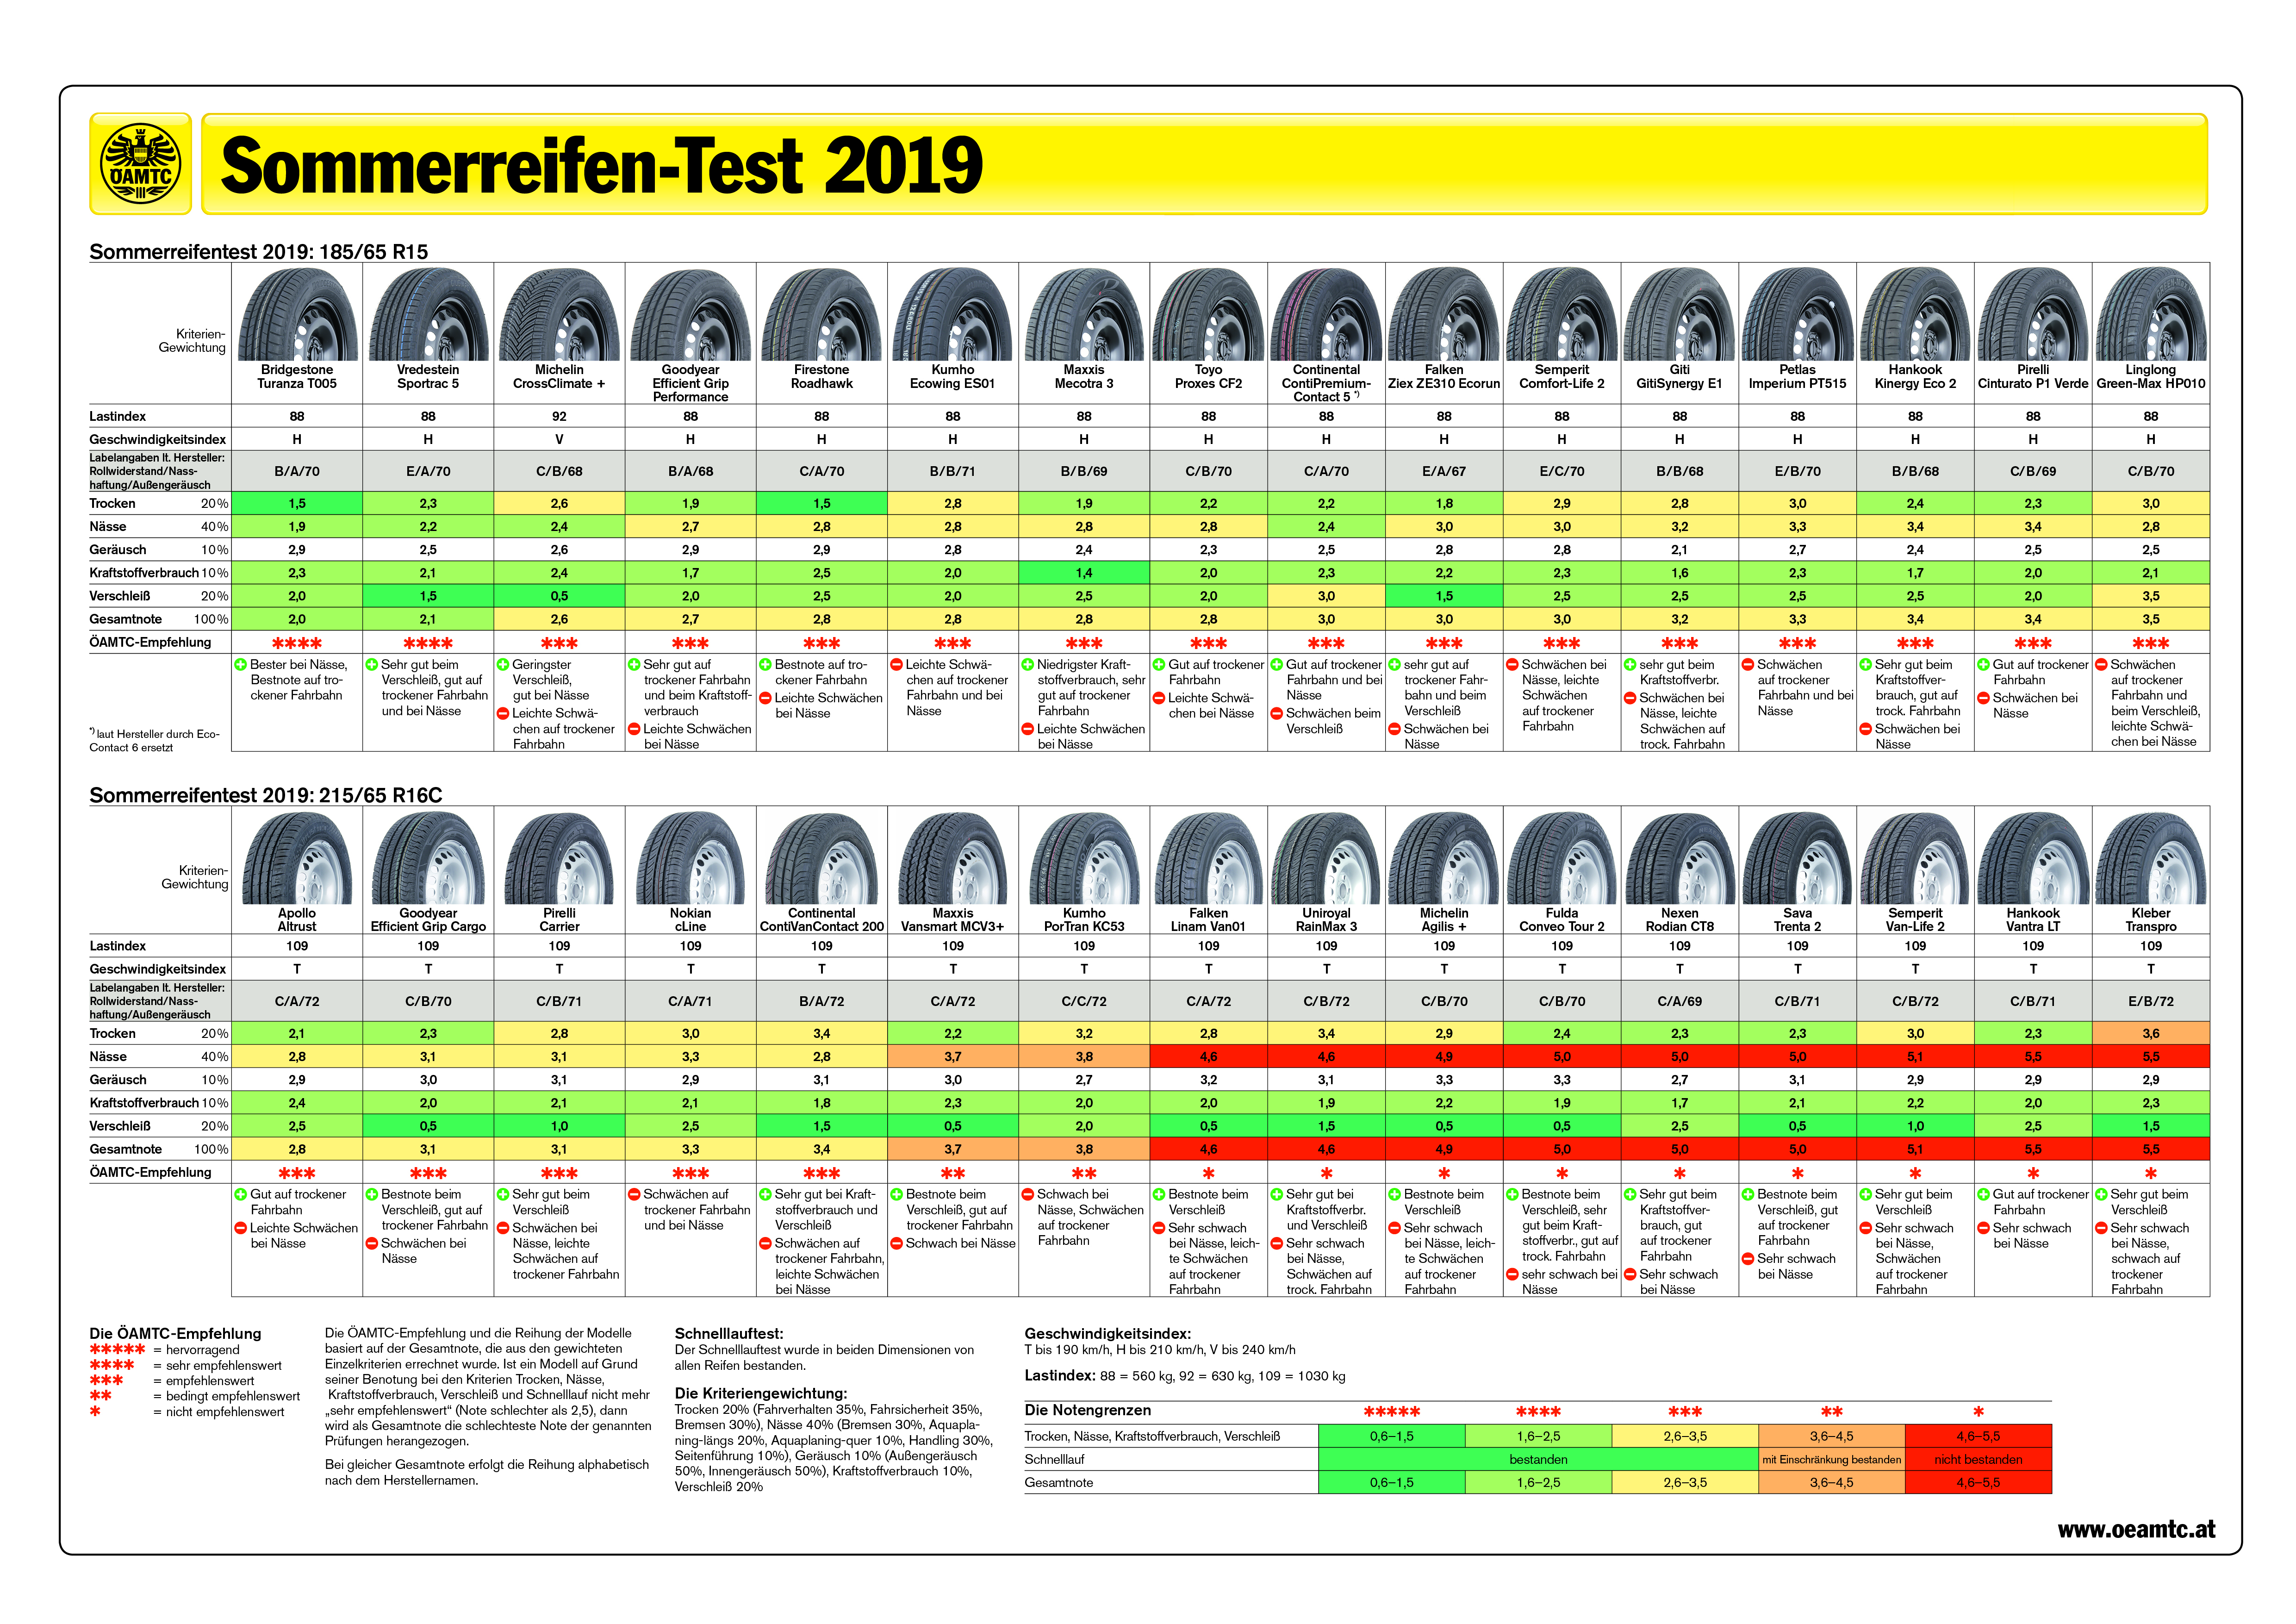 Sommerreifen-Test Ergebnisse 2019: Alle